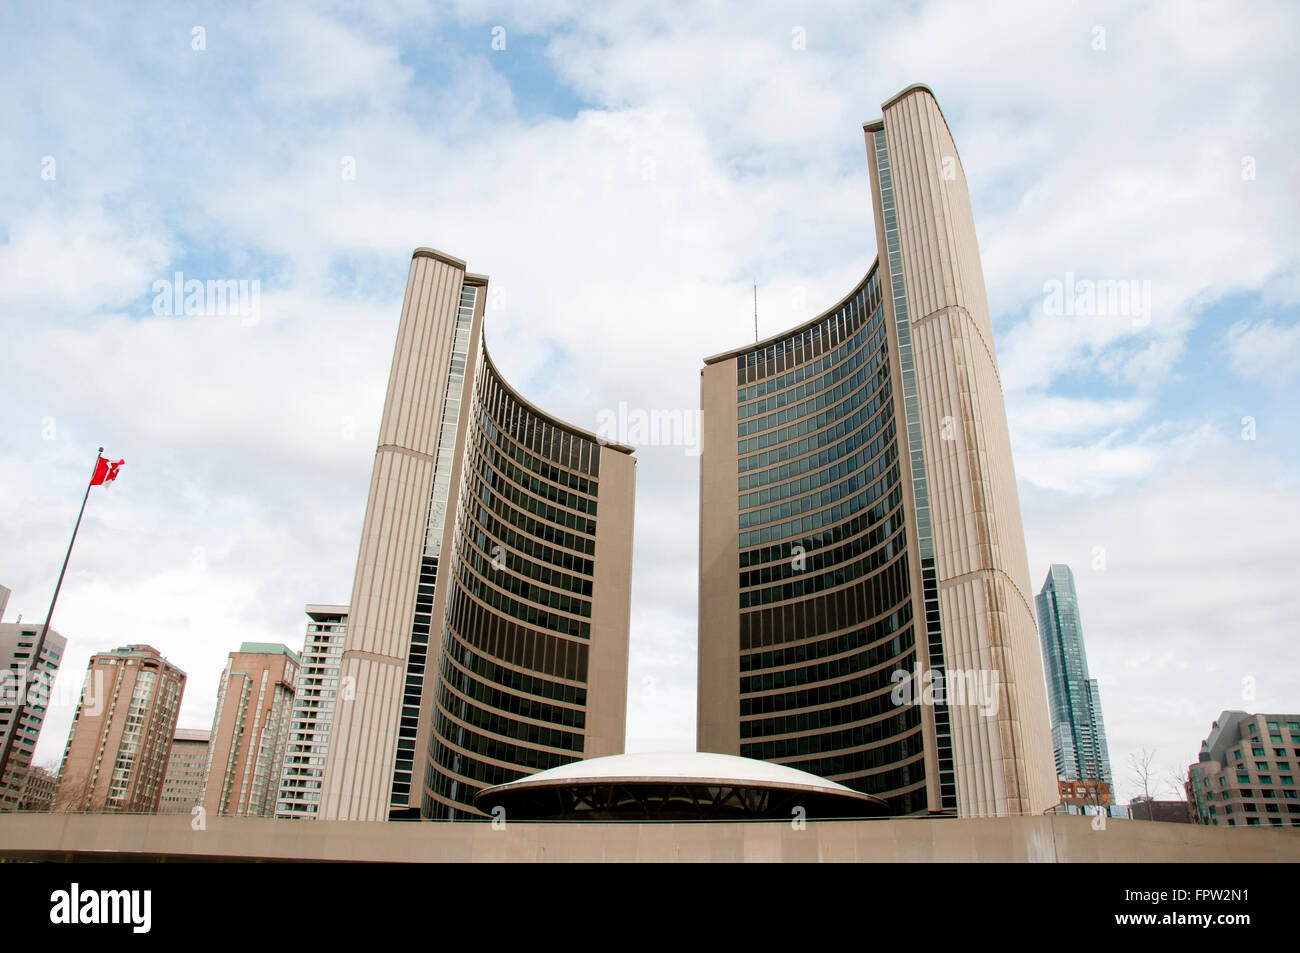 City Hall - Toronto - Canada Stock Photo